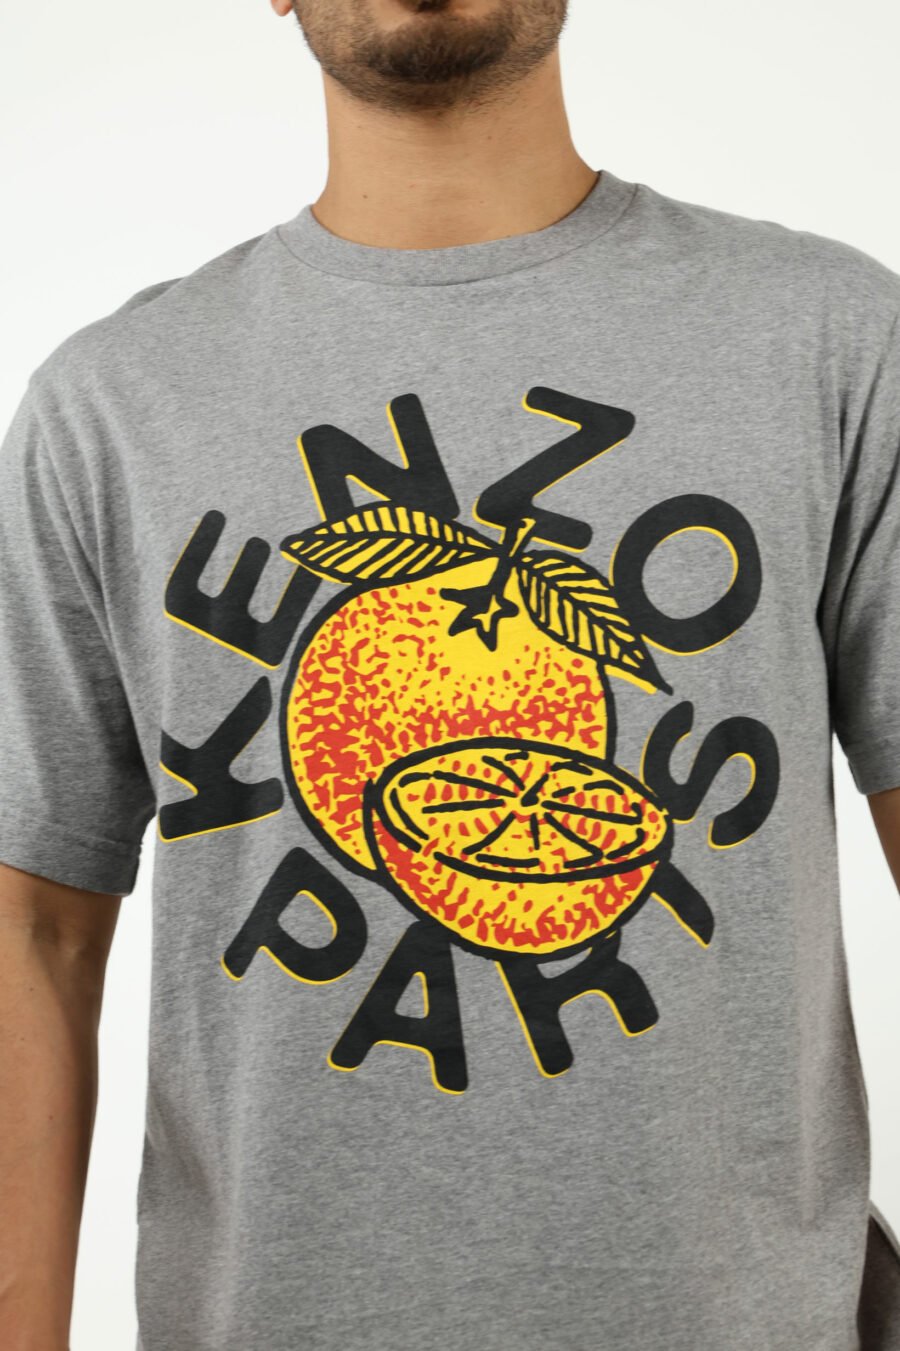 Camiseta gris con maxilogo "kenzo orange" - number13592